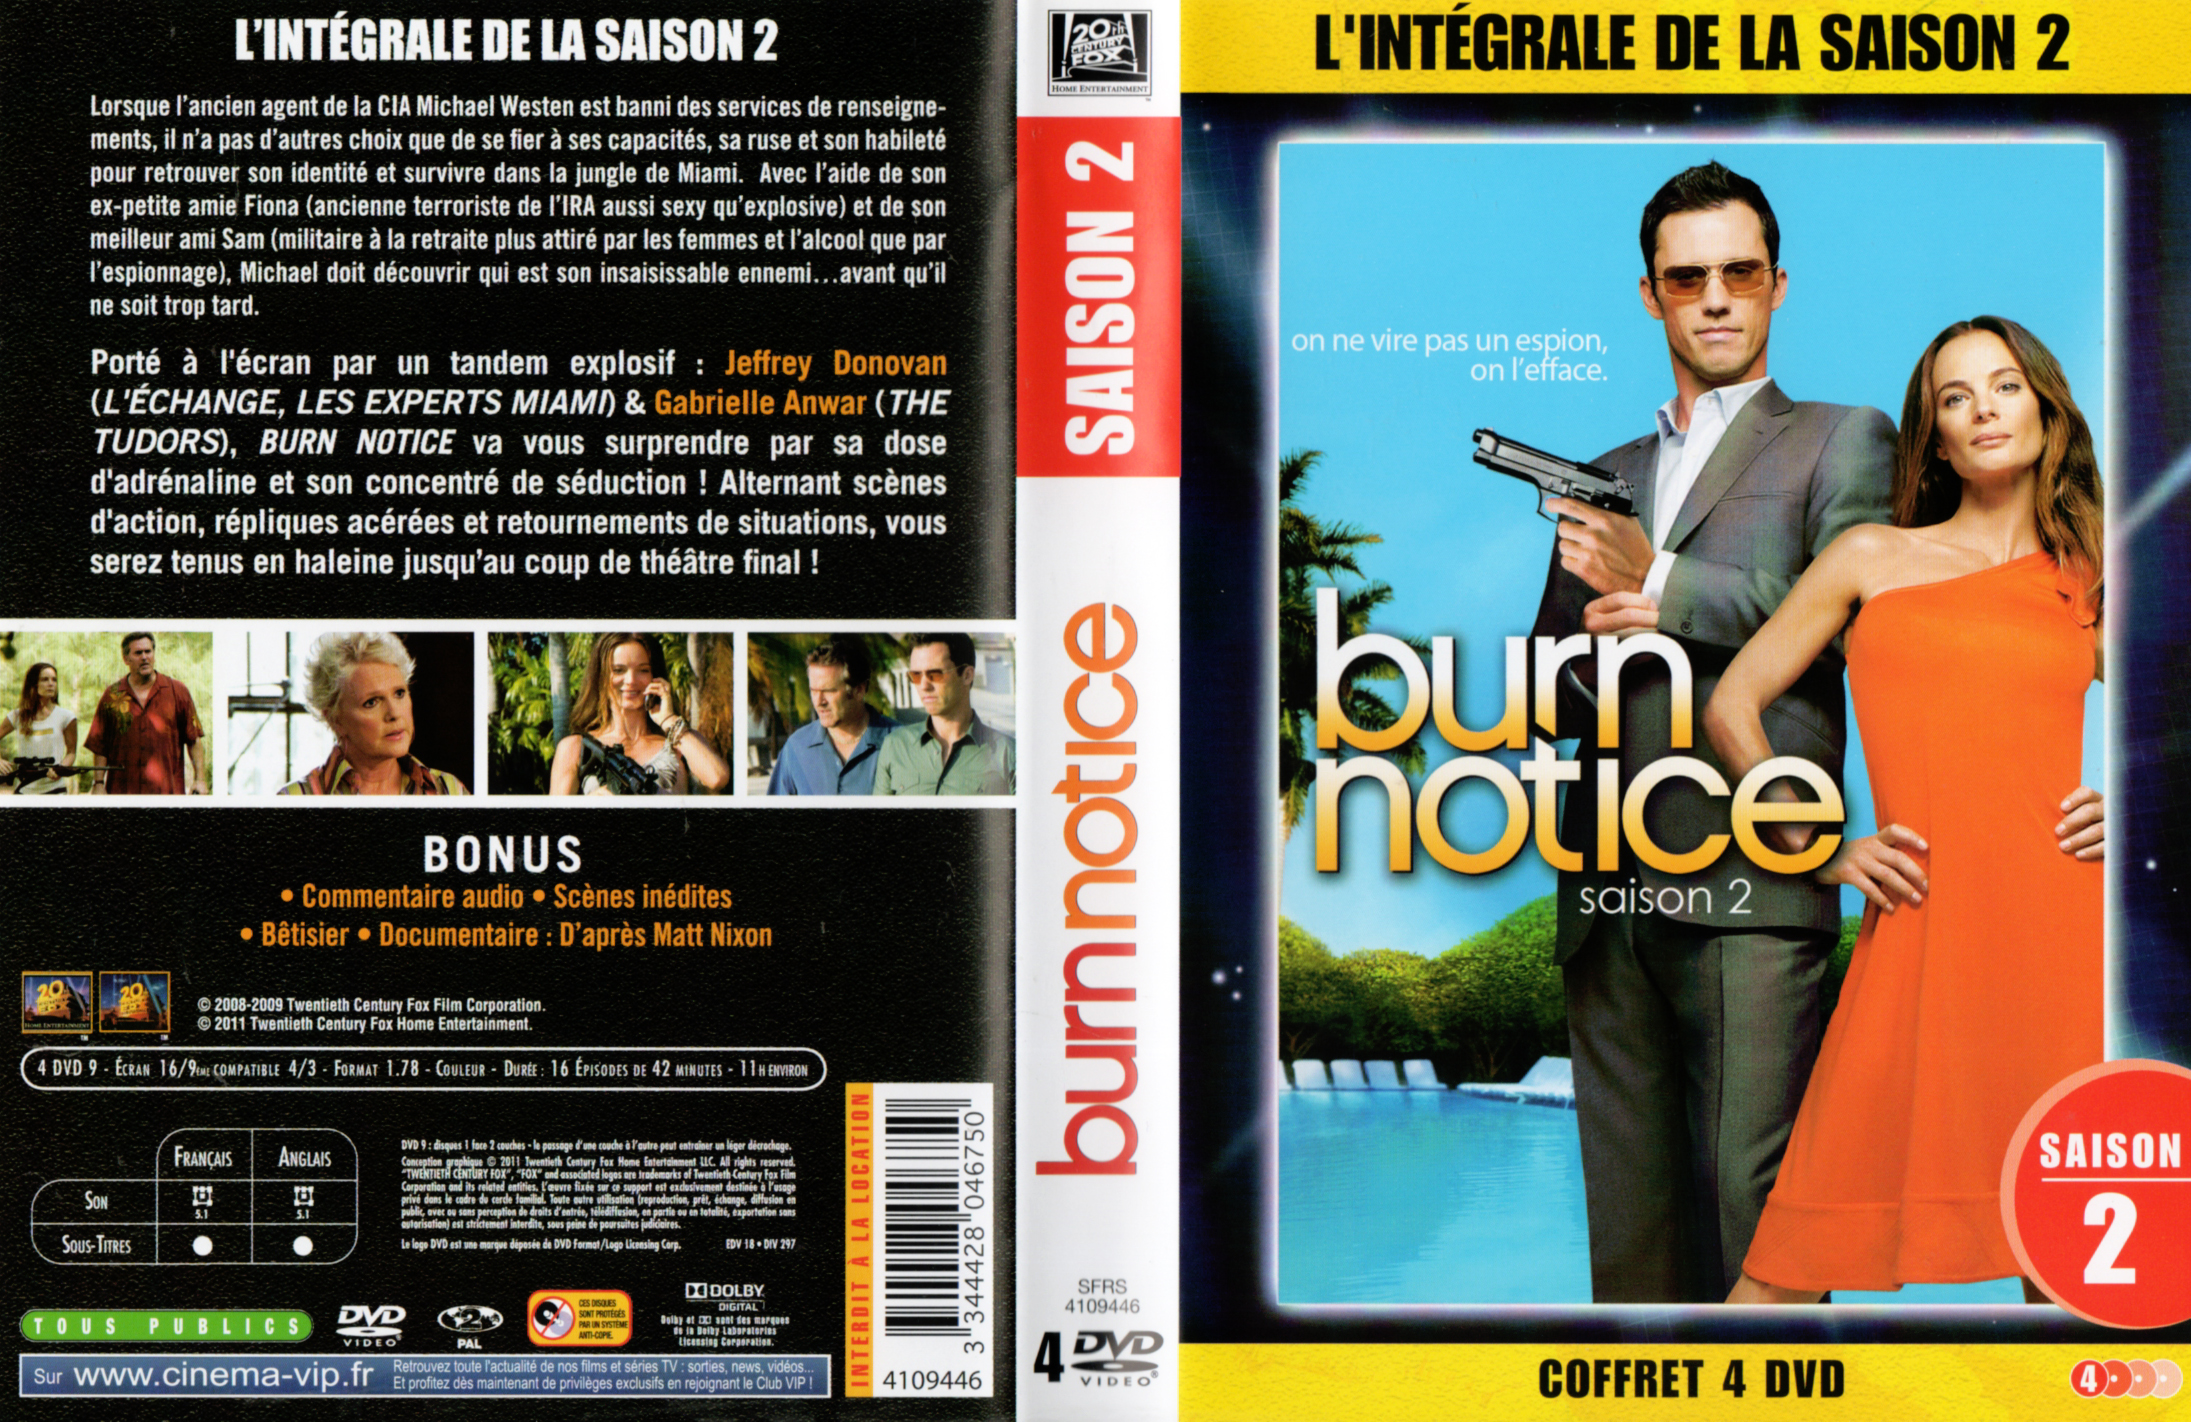 Jaquette DVD Burn notice saison 2 COFFRET v3